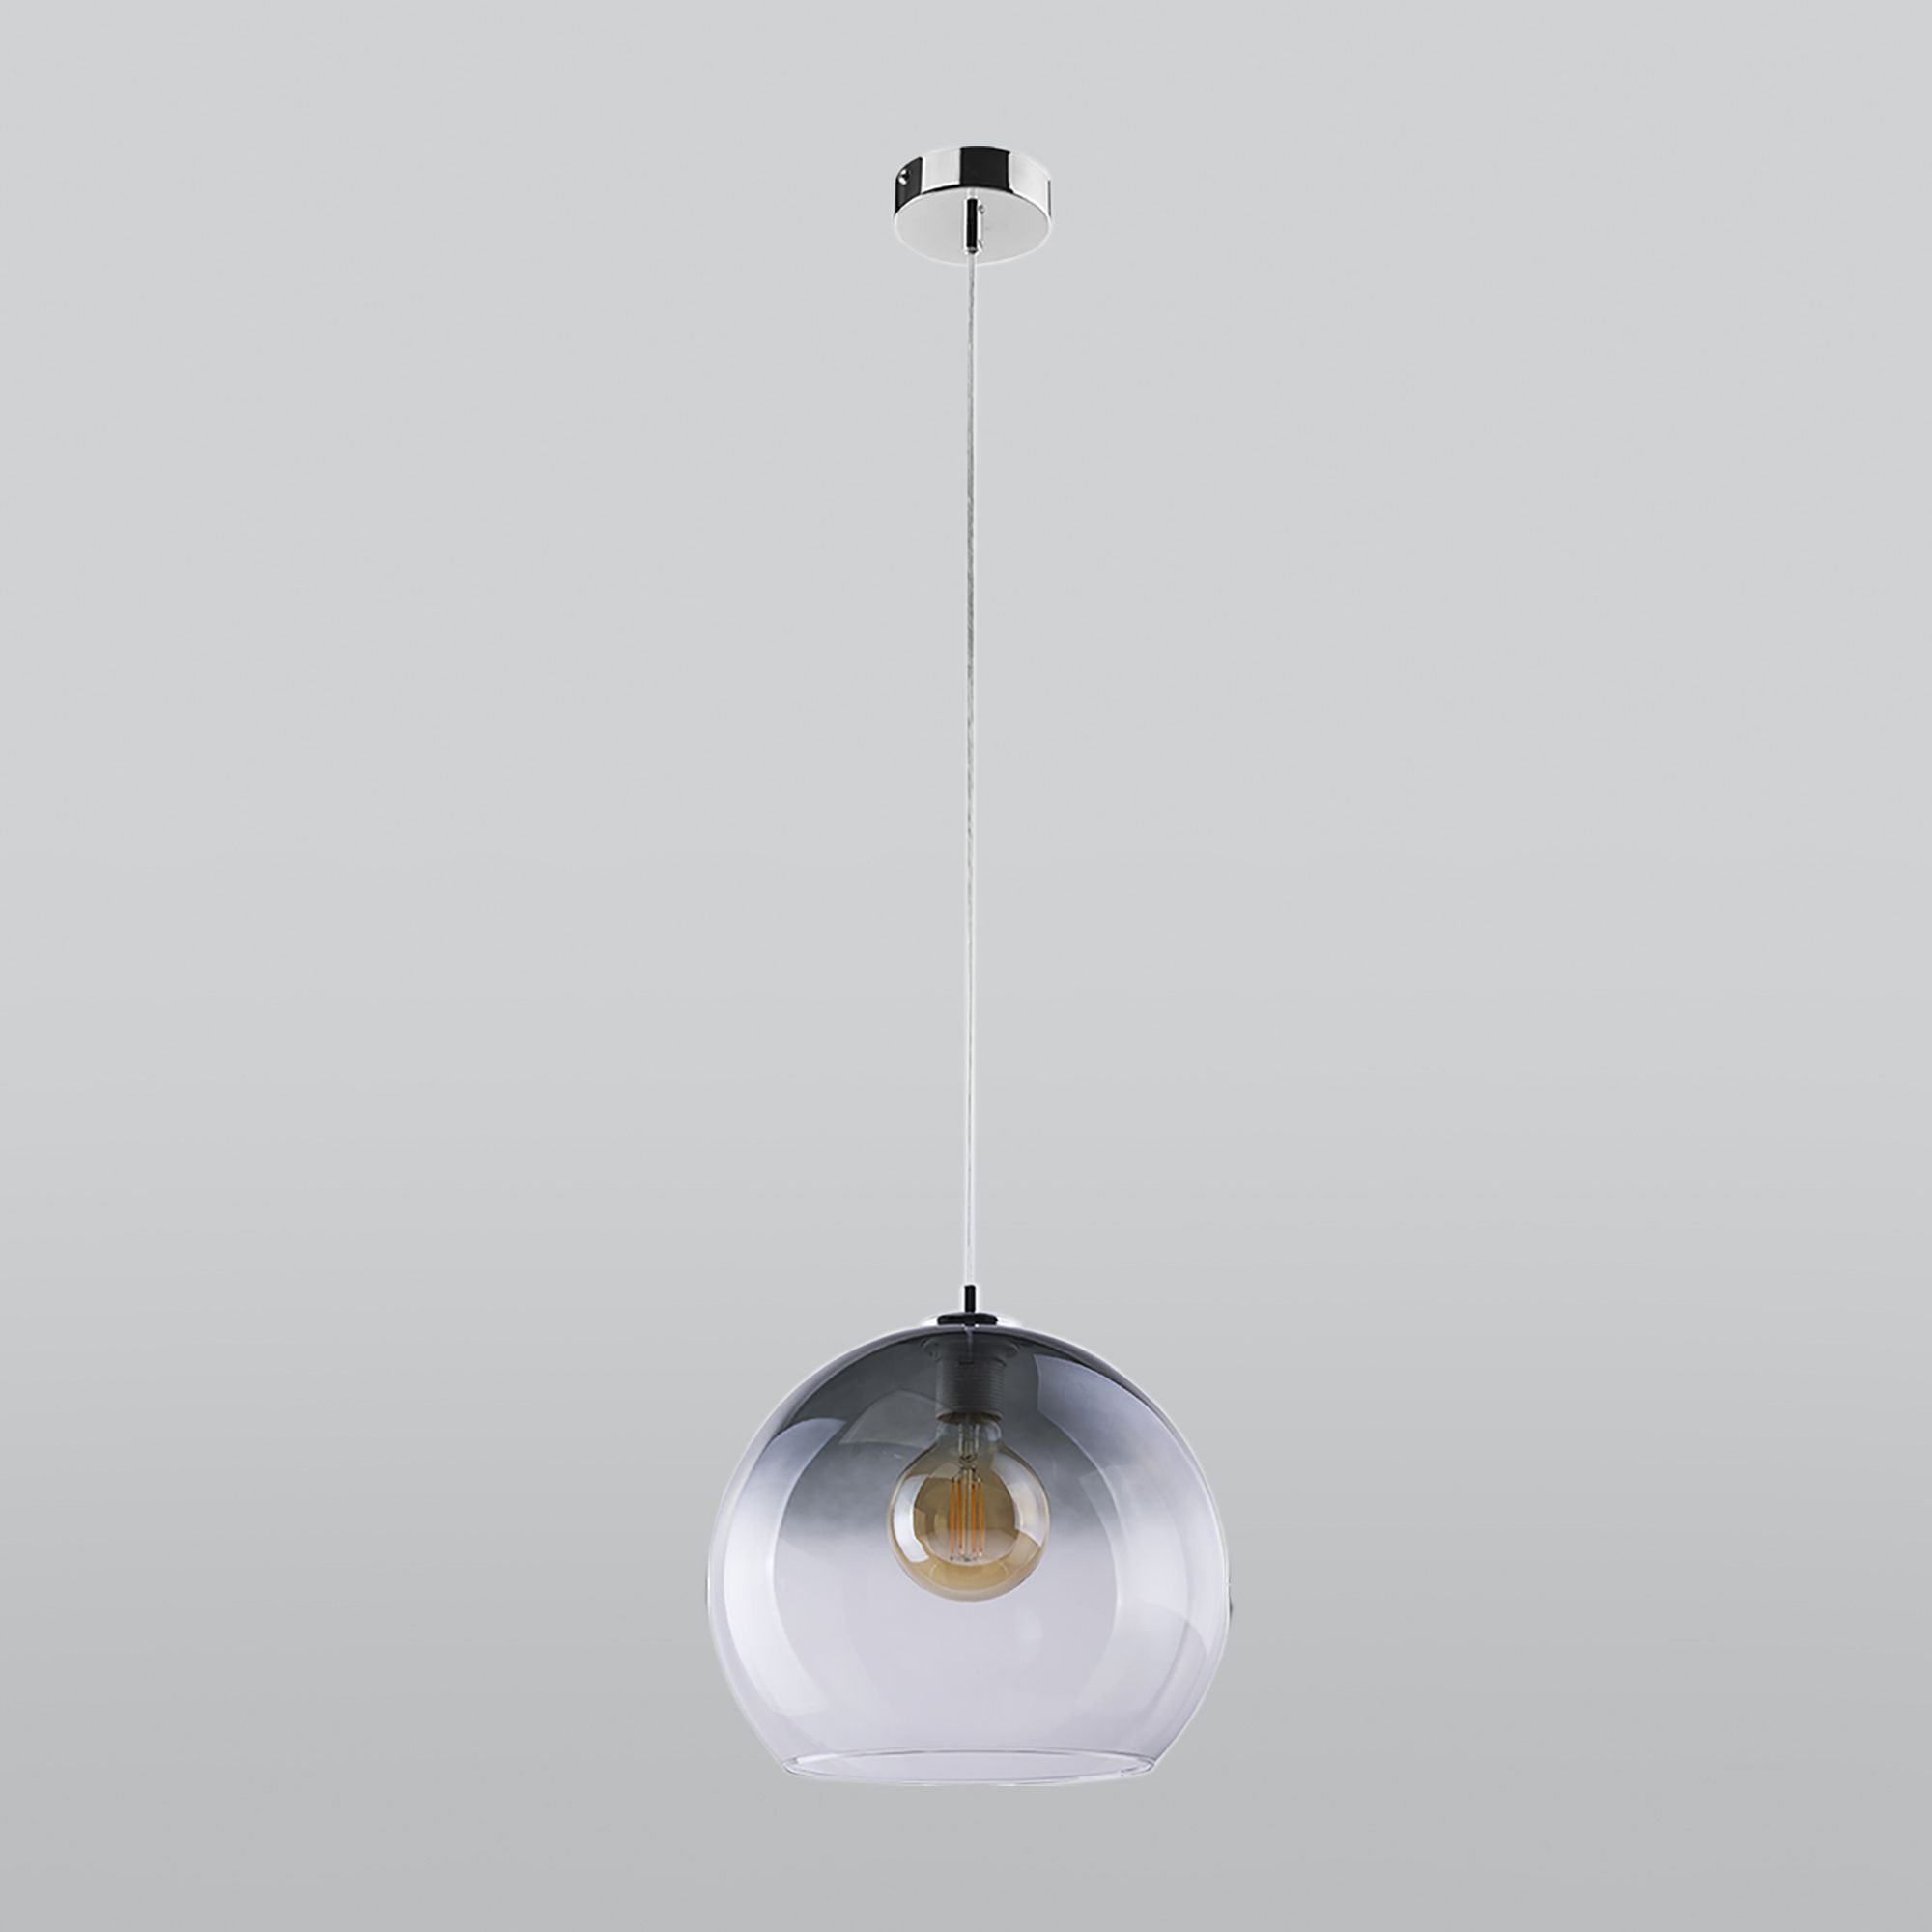 Подвесной светильник с круглым стеклянным плафоном TK Lighting Santino 2610 Santino. Фото 1